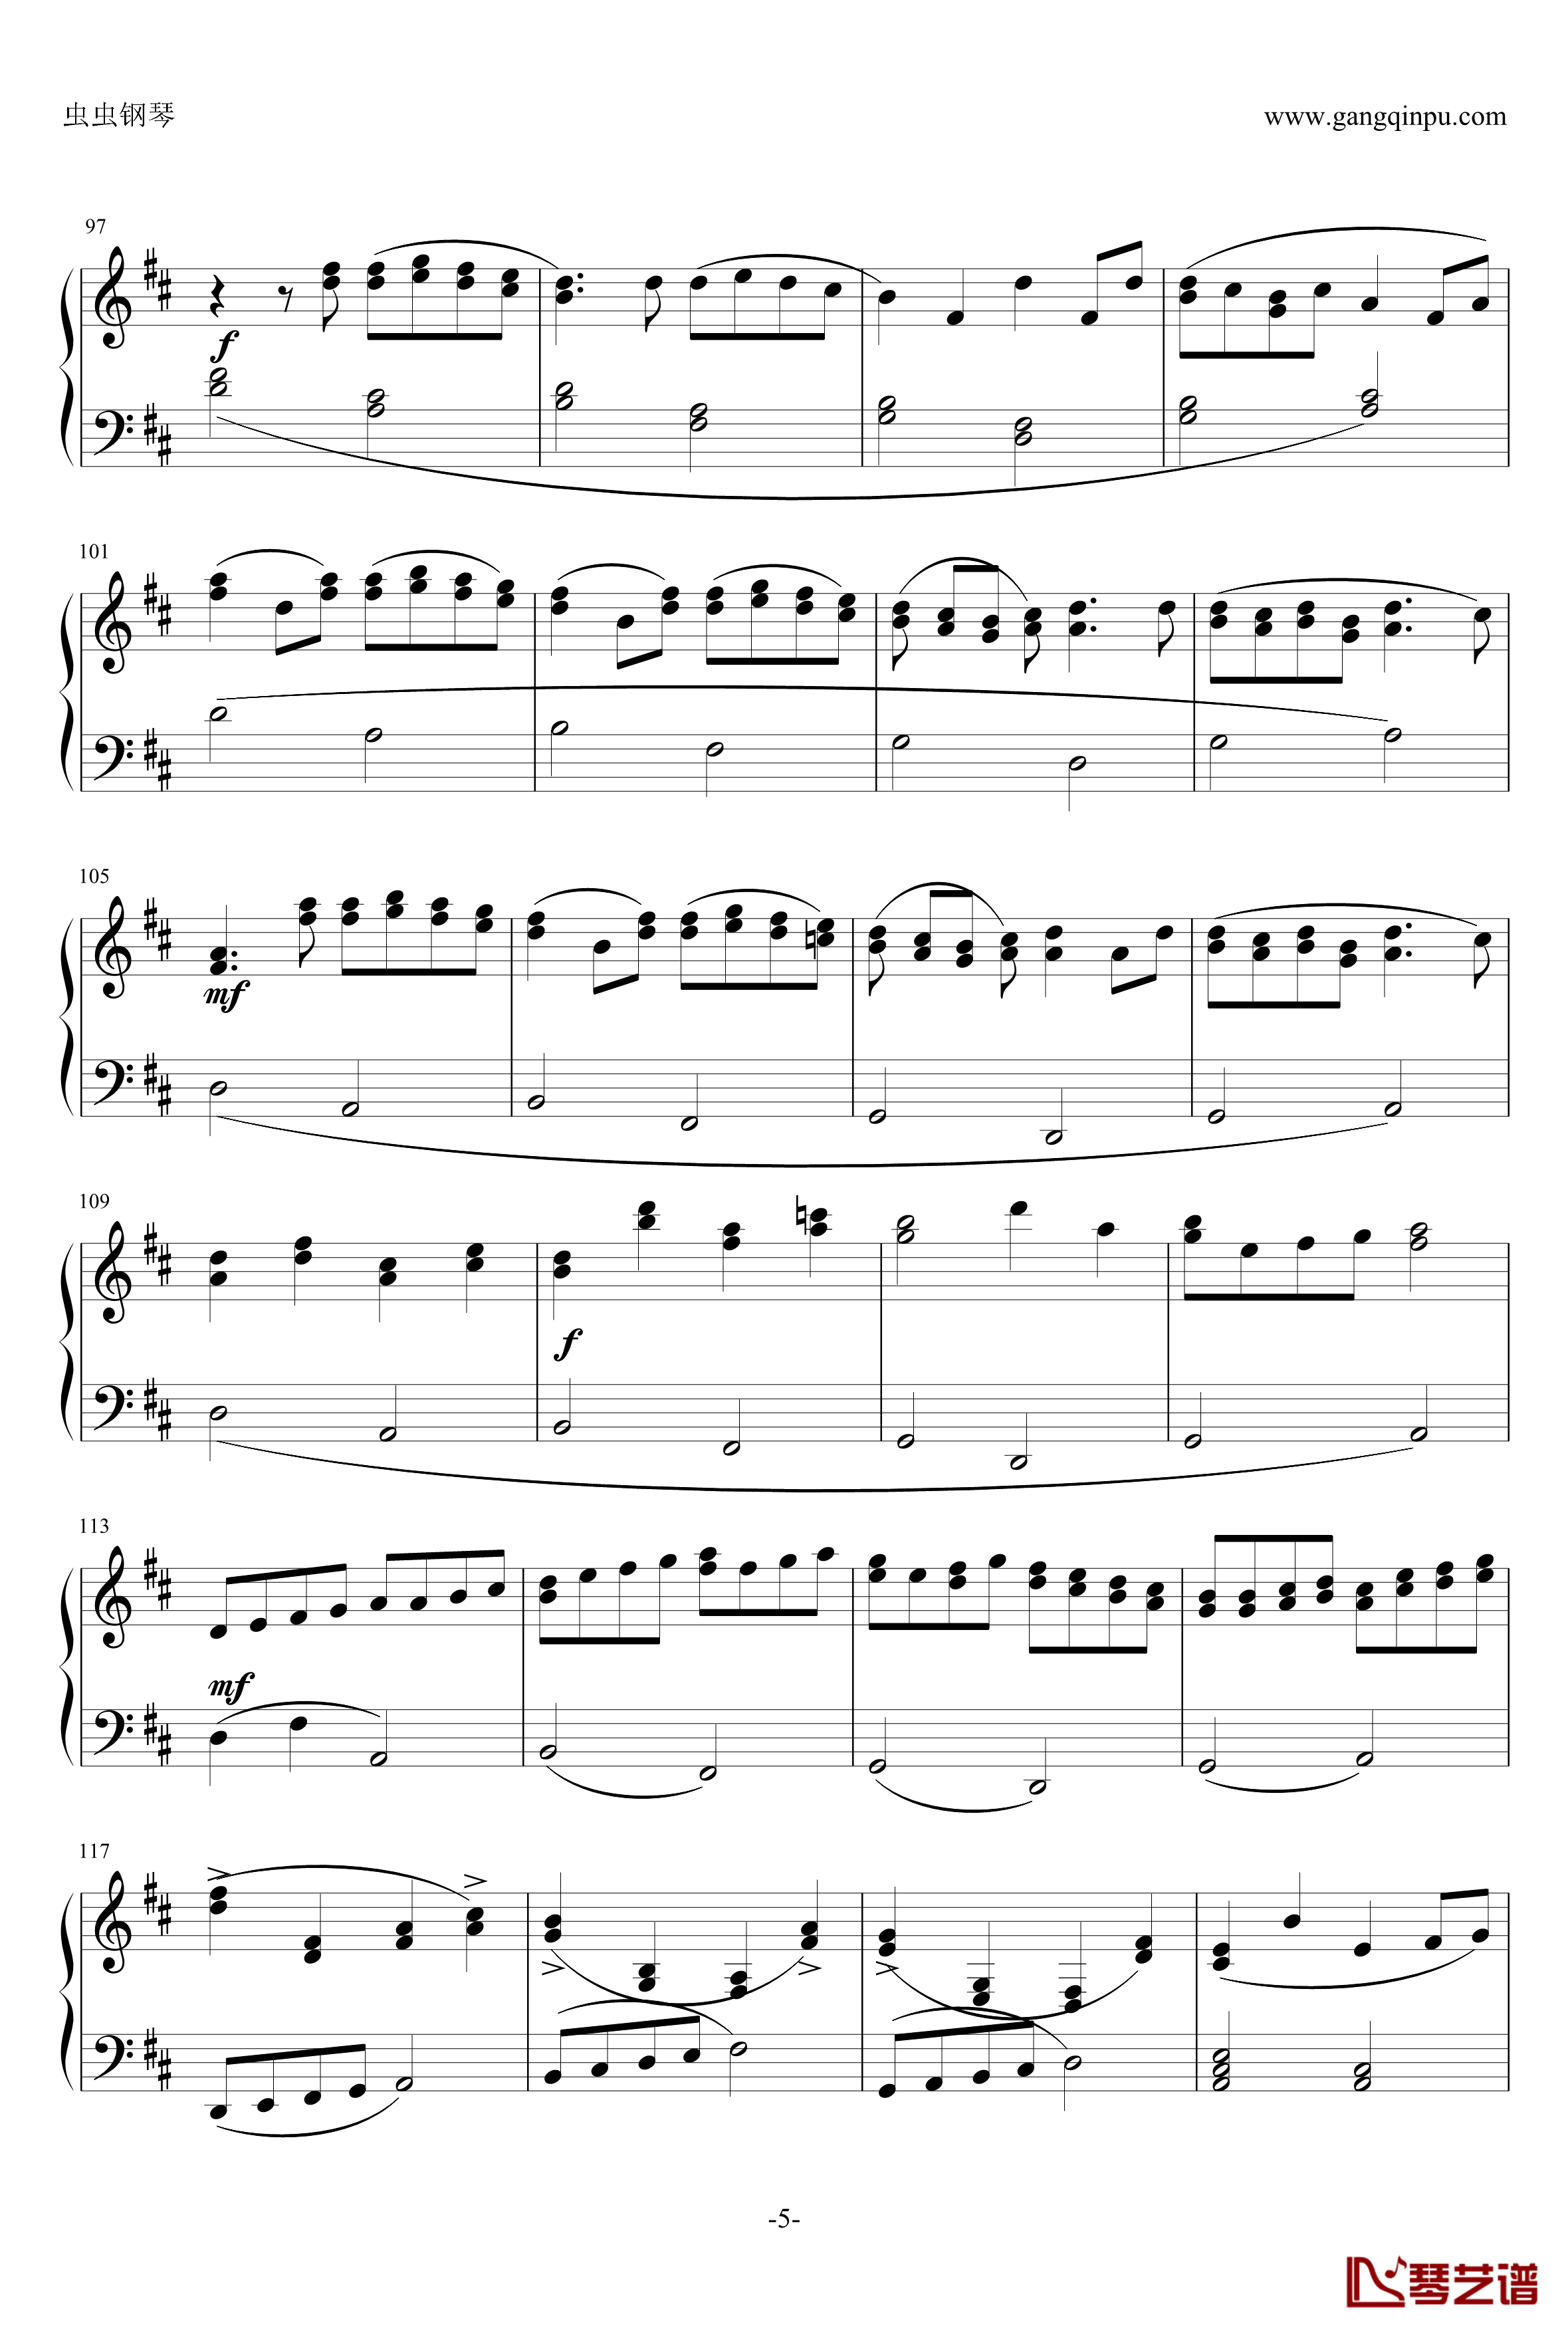 帕赫贝尔钢琴谱-Pacheble's Canon in D Long Version-Pachelbel5